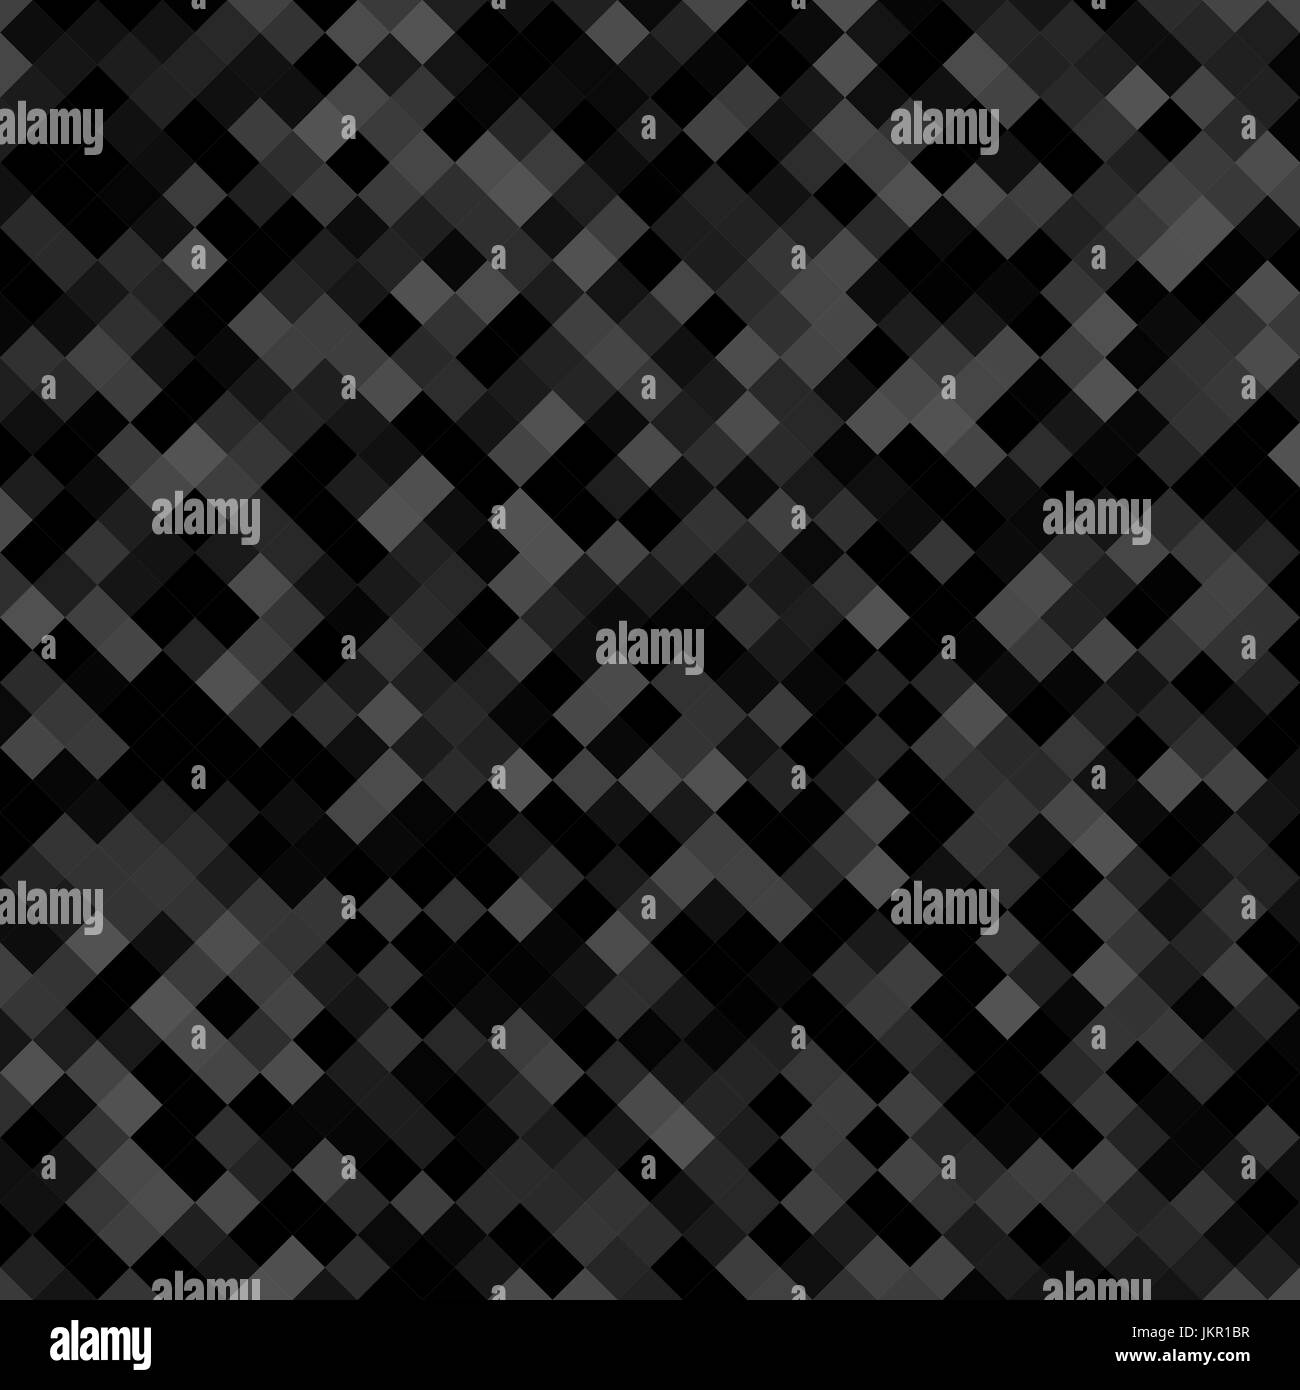 Dunkel grau Karomuster Hintergrund - geometrischen Vektor-Design von Diagonale Quadrate Stock Vektor